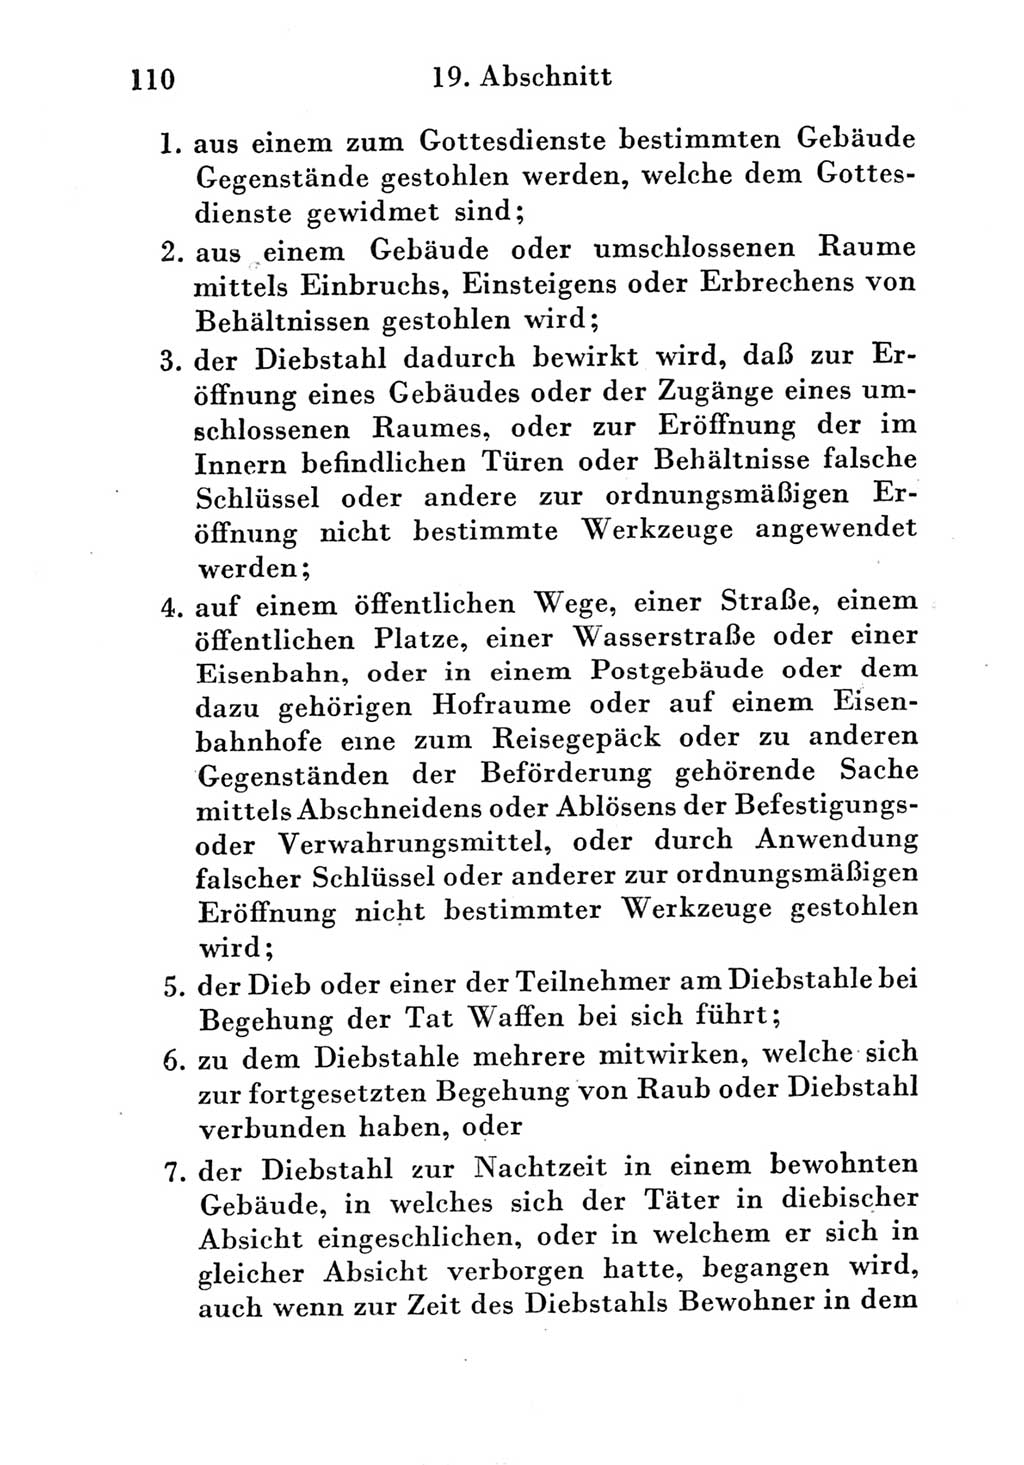 Strafgesetzbuch (StGB) und andere Strafgesetze [Deutsche Demokratische Republik (DDR)] 1951, Seite 110 (StGB Strafges. DDR 1951, S. 110)